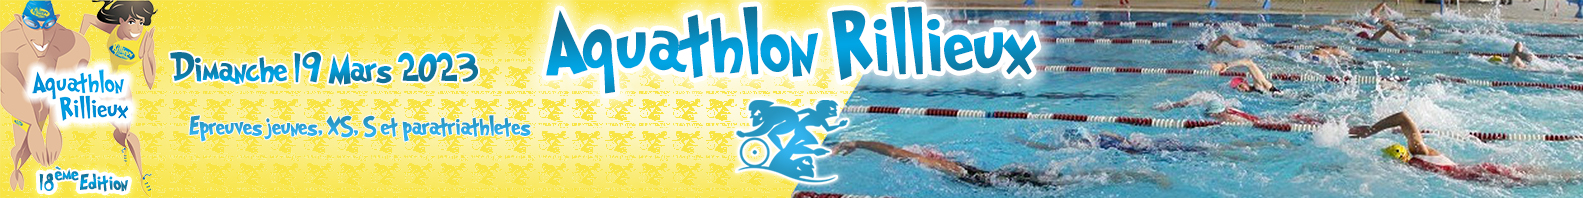 Aquathlon de Rillieux